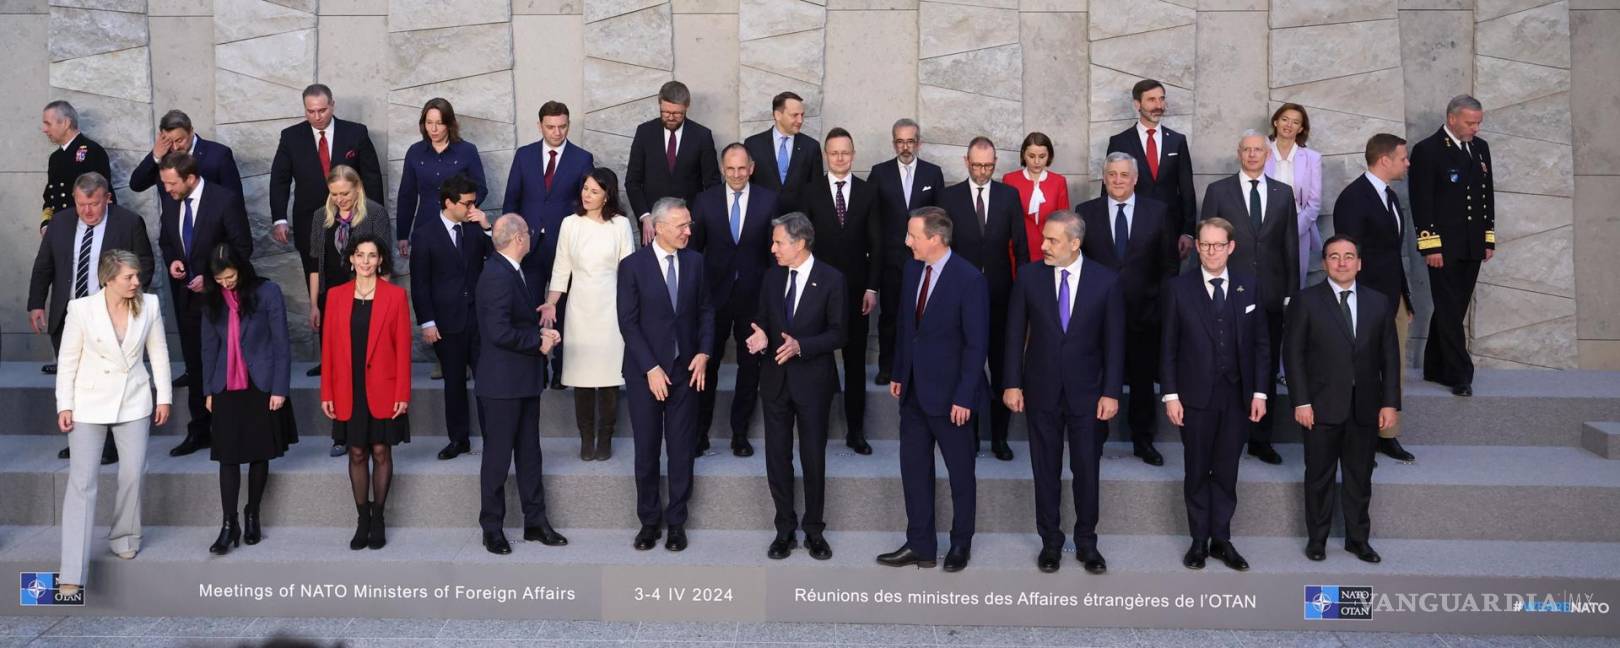 $!Los ministros de Asuntos Exteriores posan durante una reunión de ministros de Asuntos Exteriores de la Organización del Tratado del Atlántico Norte en Bruselas.